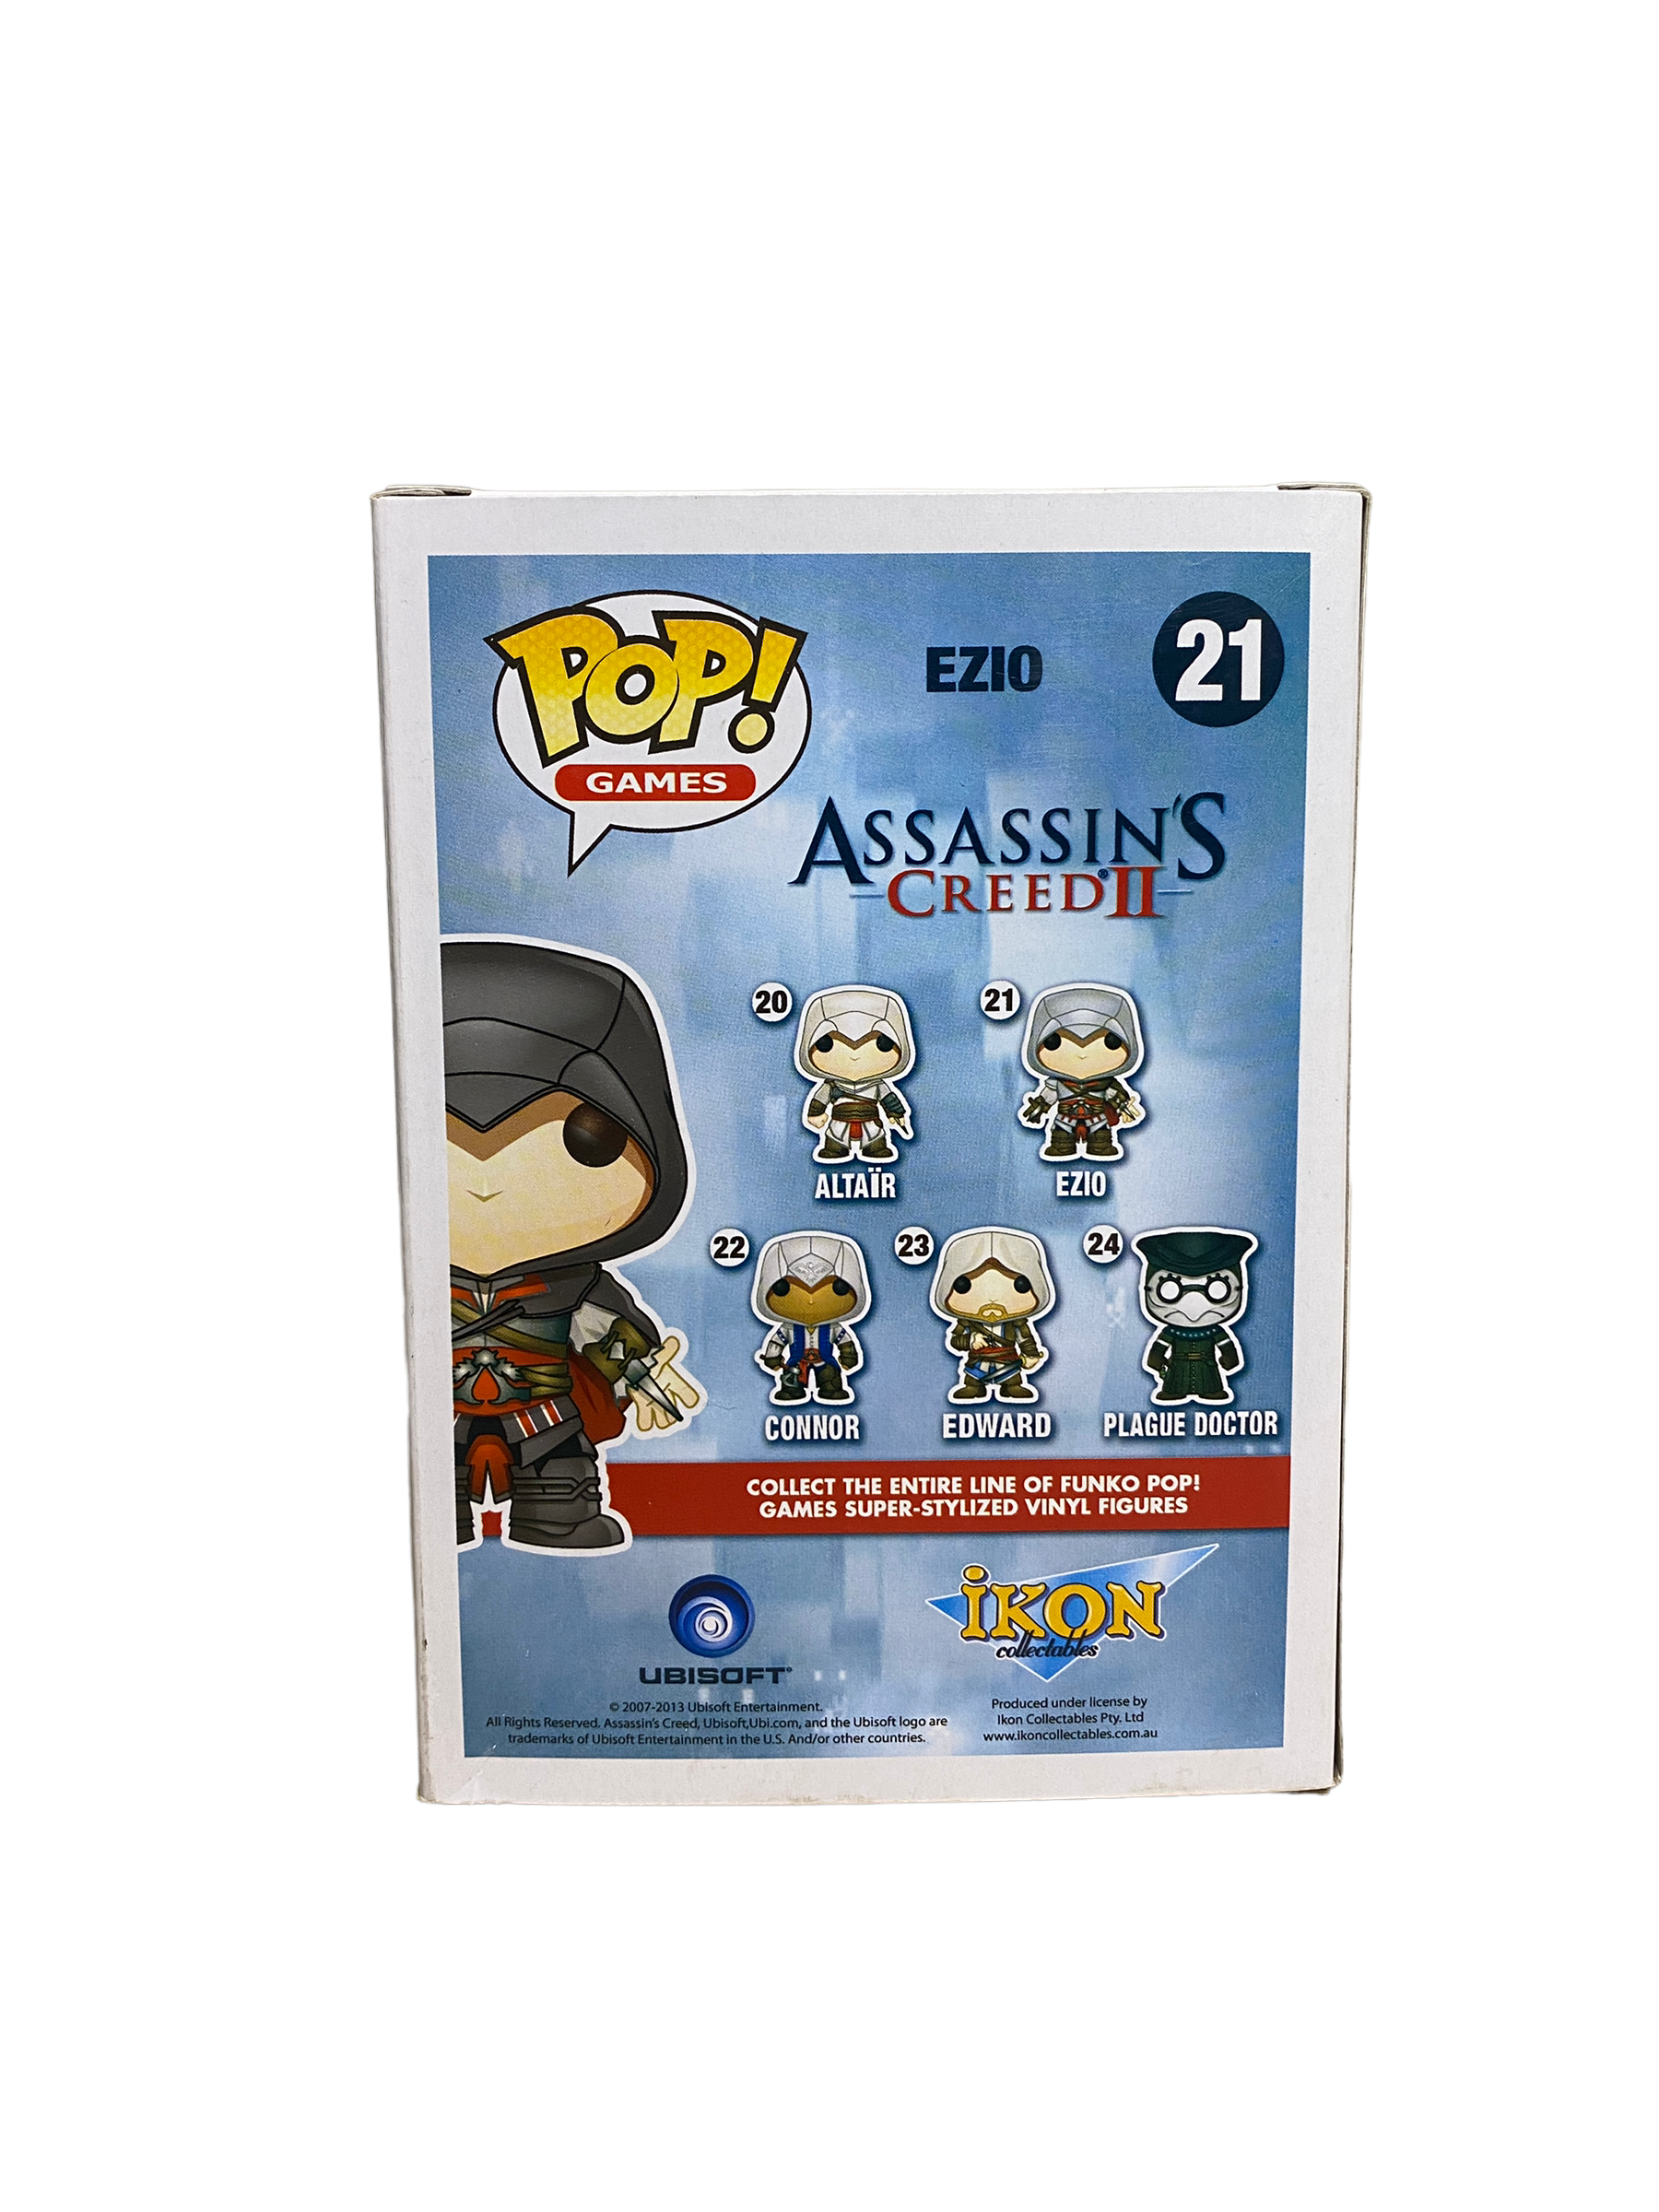 Ezio #21 (Black) Funko Pop! - Assassin's Creed II - 2013 Pop! - Condition 8.5/10